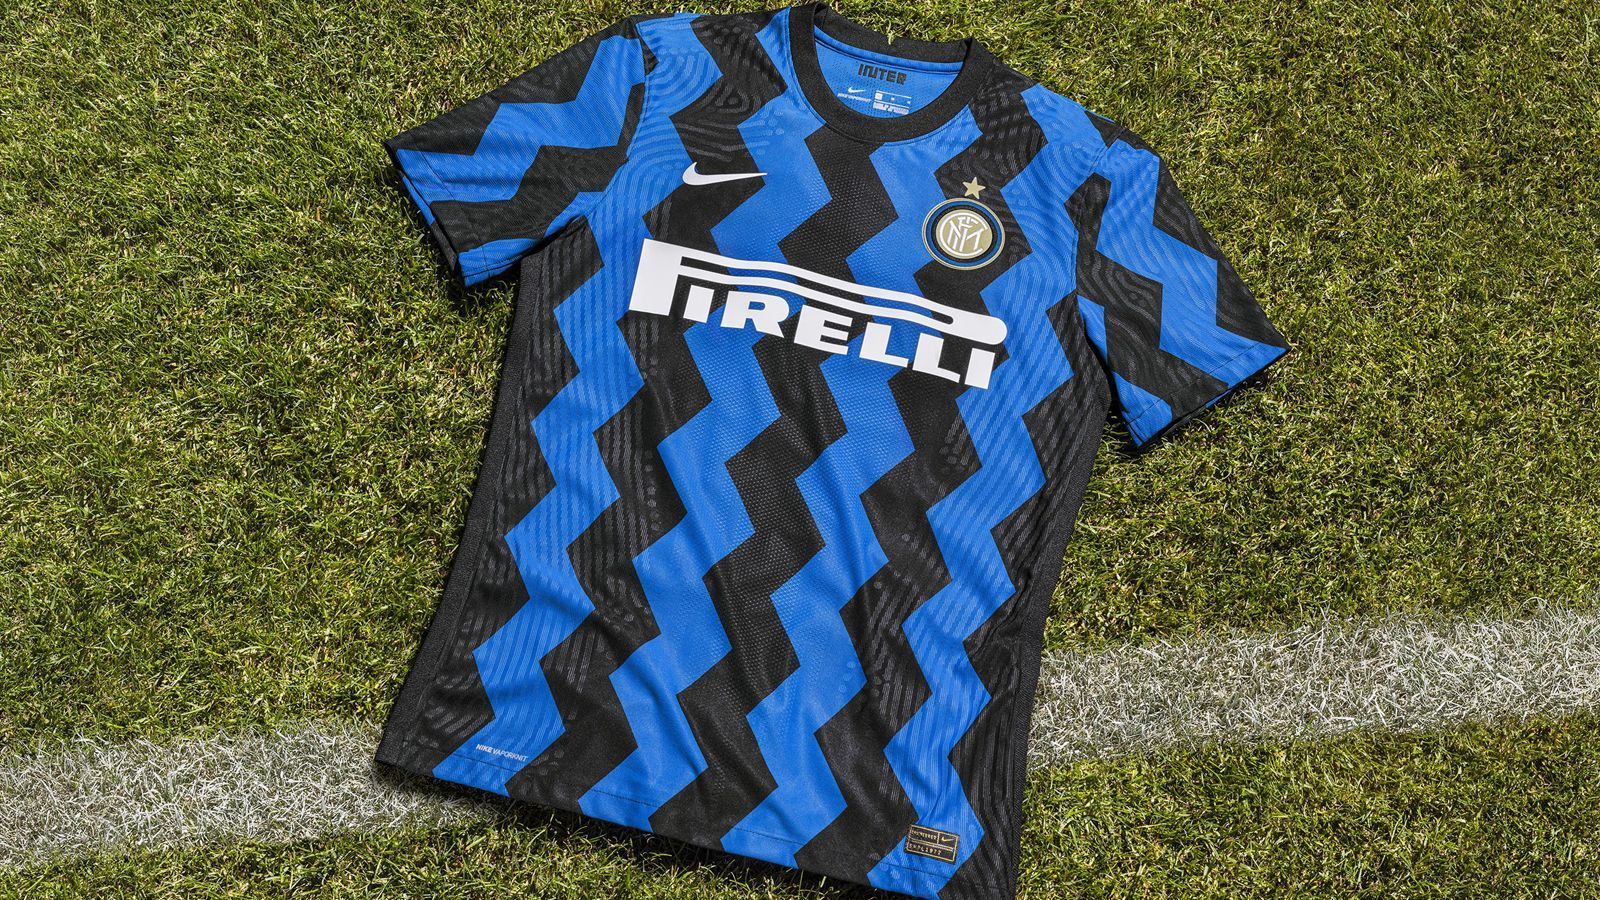 
                <strong>Inter Mailand (Heimtrikot)</strong><br>
                Die Mailänder bleiben auch in der neuen Saison ihrem traditionellen Design aus blau-schwarzen Streifen treu. Einzige Veränderung ist das Zick-Zack-Muster auf dem neuen Leibchen von Inter. In den sozialen Netzwerken feiern die Fans der Italiener das Trikot bereits ausgiebig, nach einem viertägigen Vorverkauf für Mitglieder und Dauerkartenbesitzer ist das Trikot dann ab dem 5. Juli im offiziellen Fanshop zu erwerben. 
              